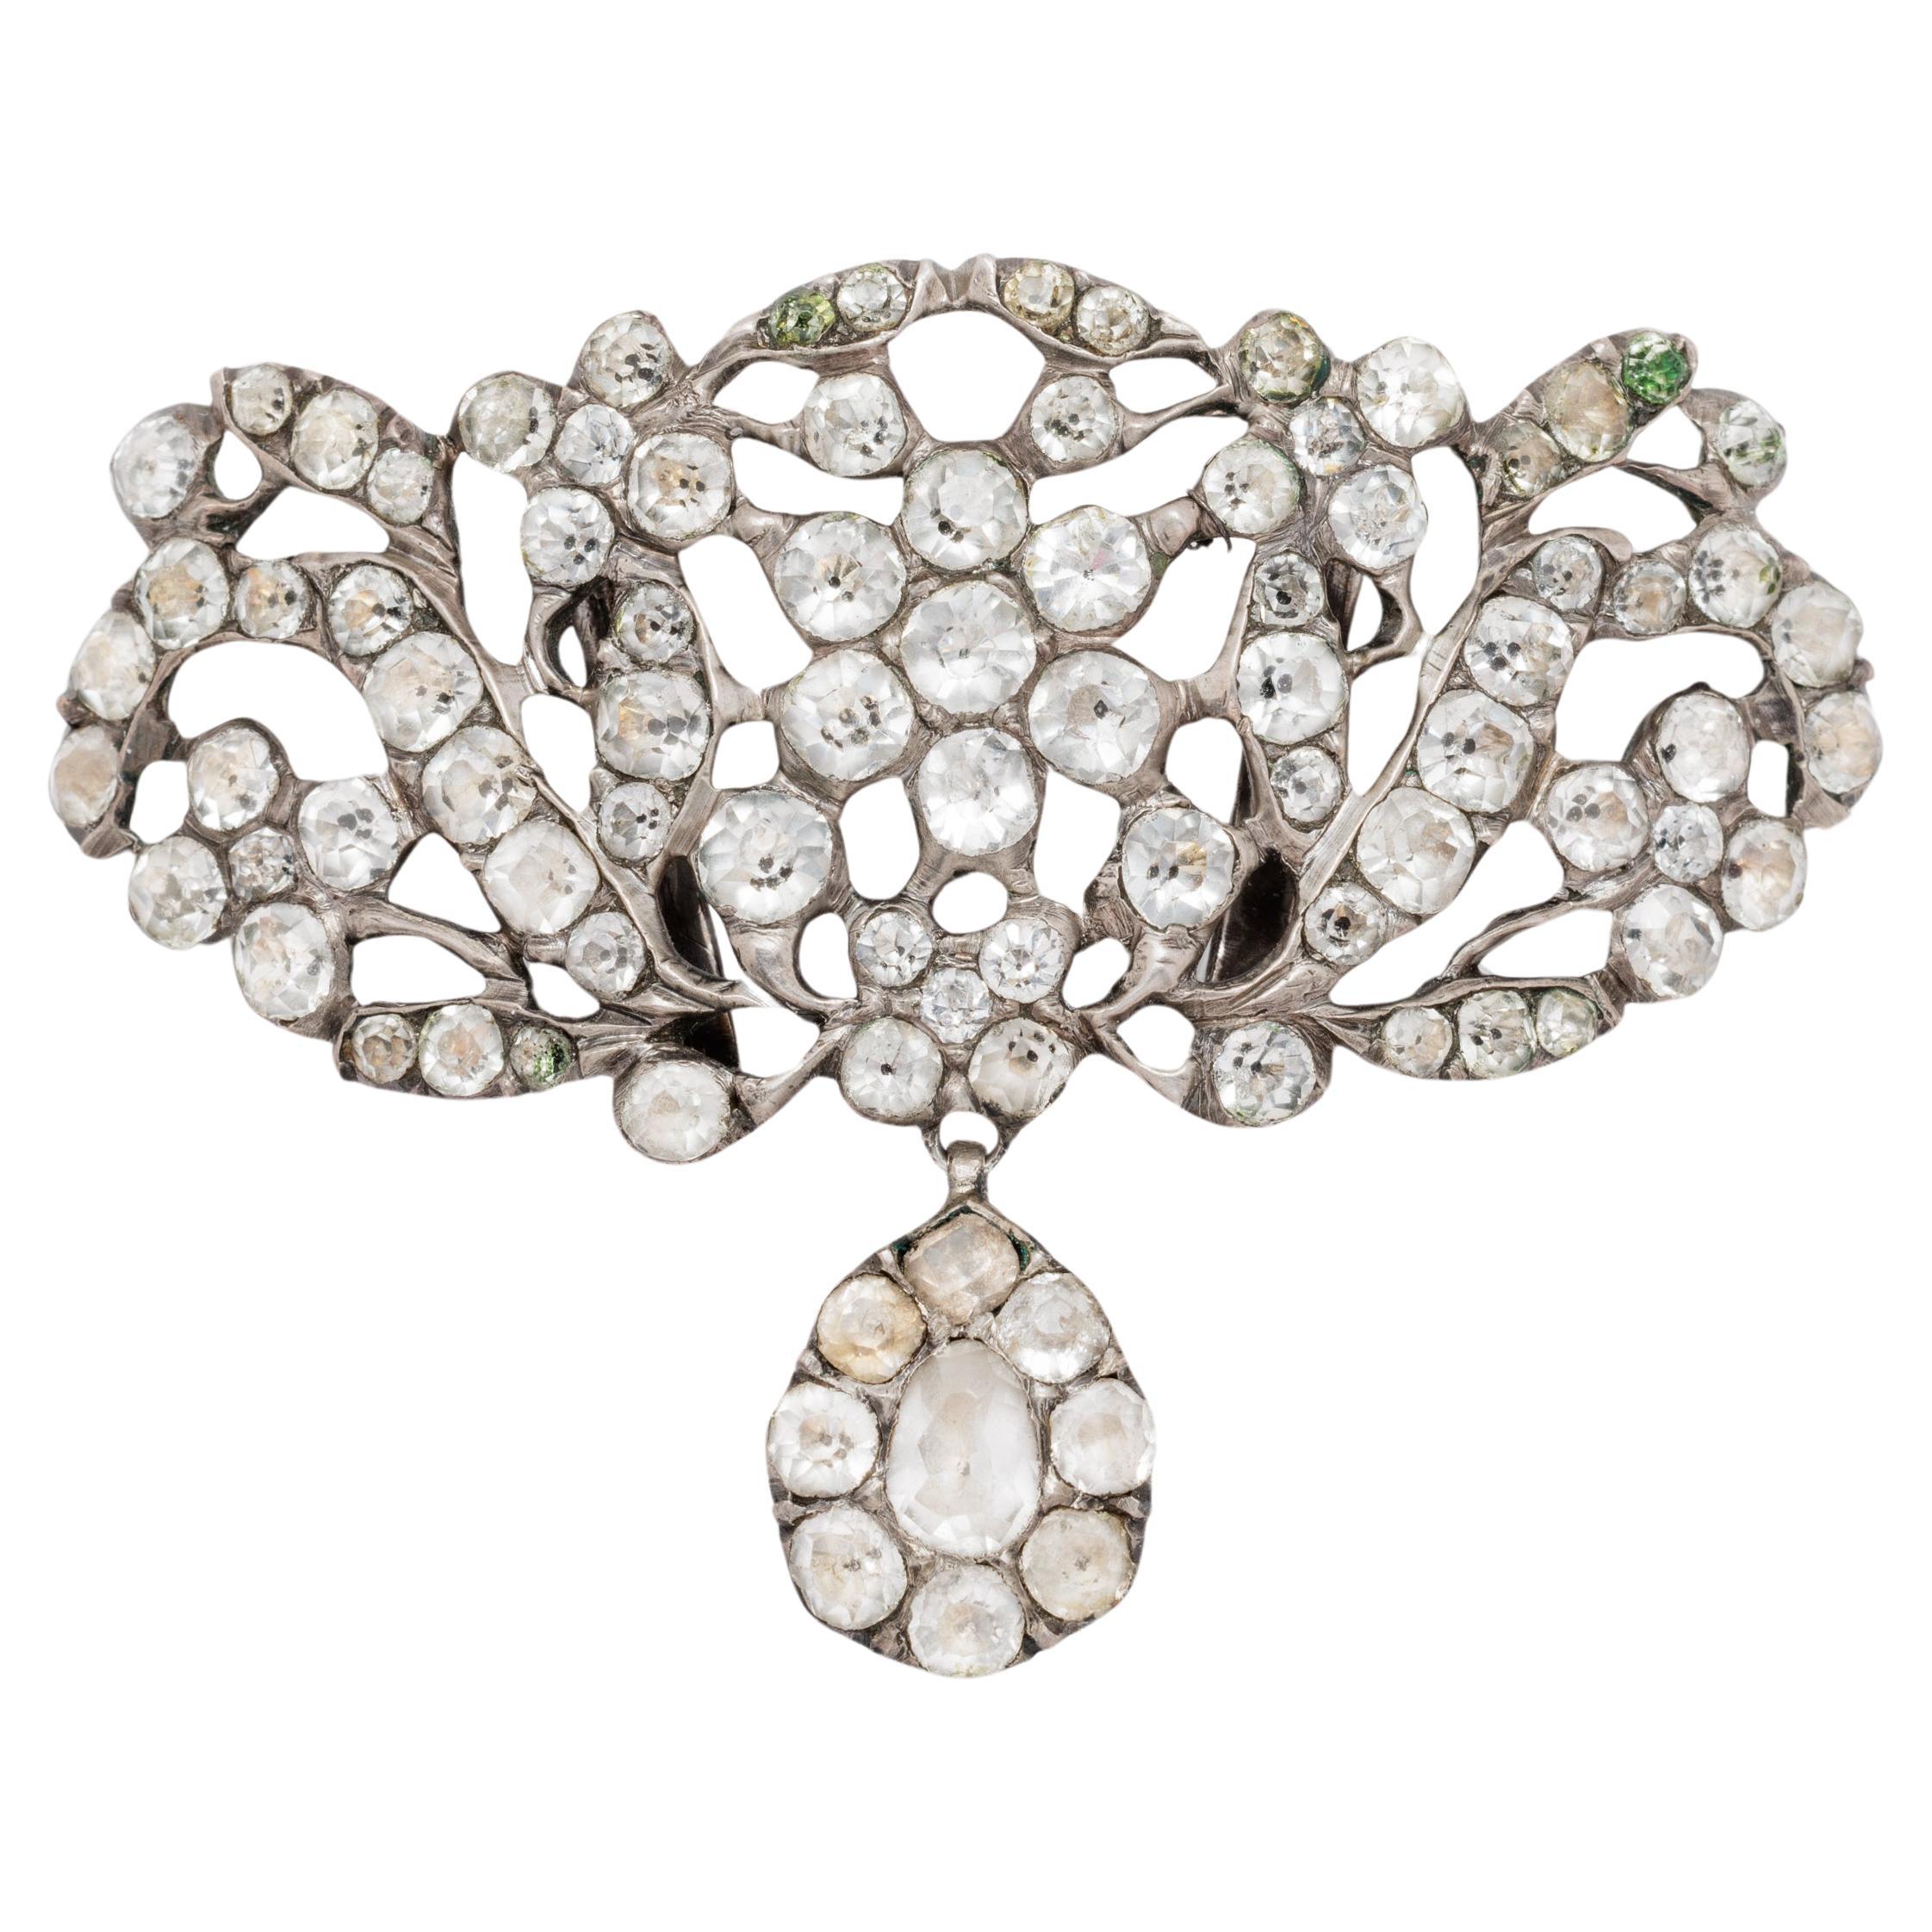 Französisches Opulente-Kragen aus geschliffenem Glas und Silber, 19. Jahrhundert